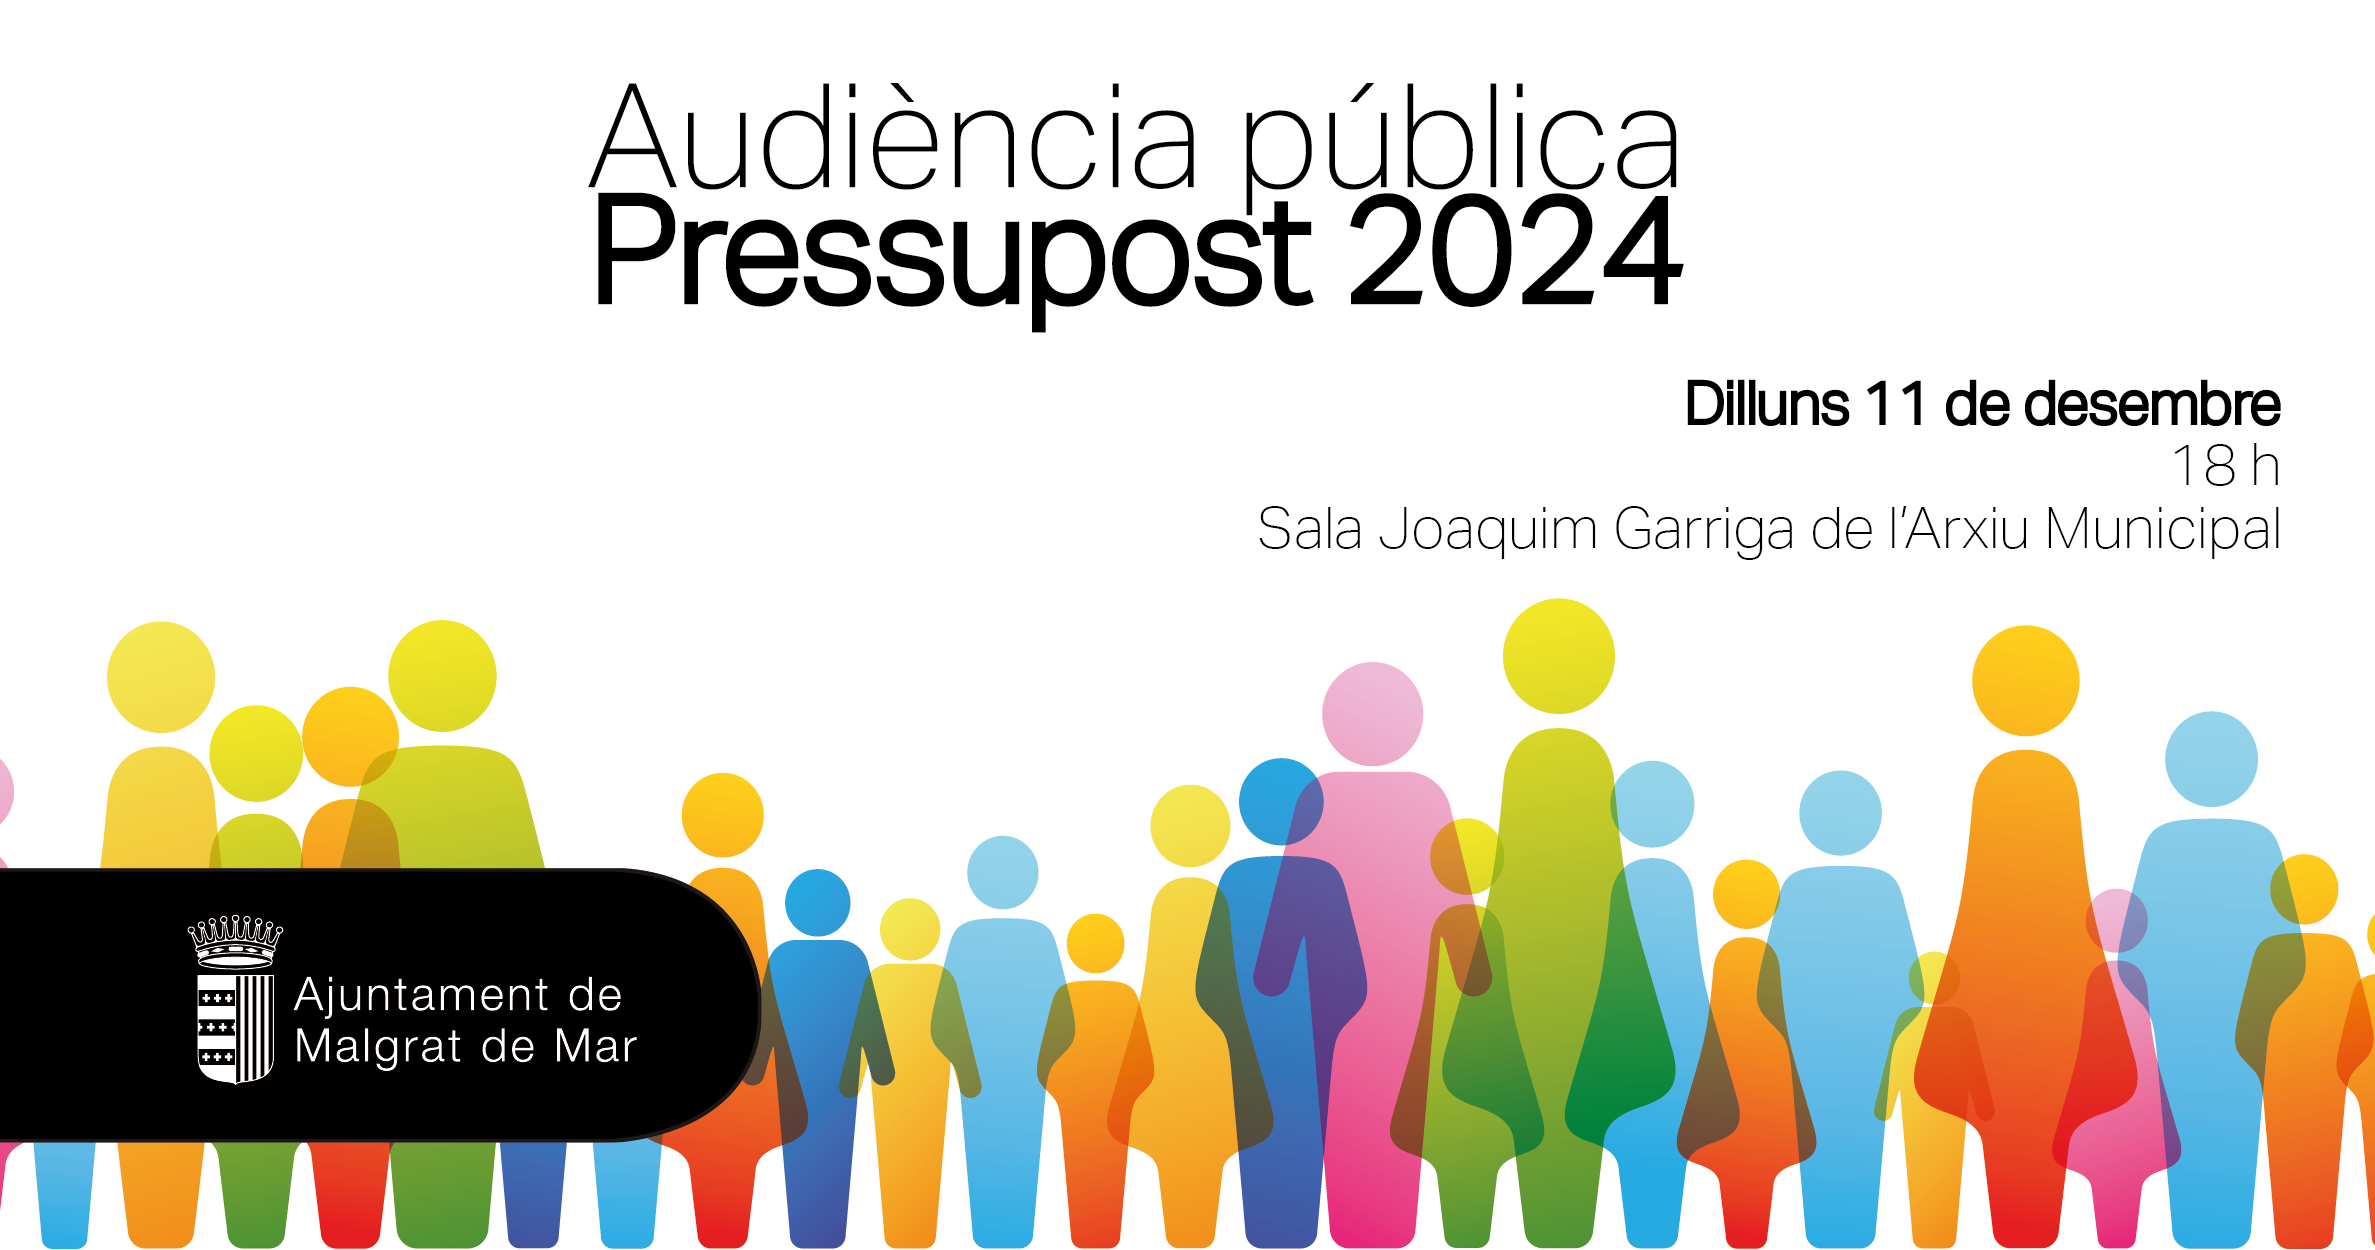 Audiència pública per presentar el pressupost de 2024, avui a les 18 h a l'Arxiu Municipal